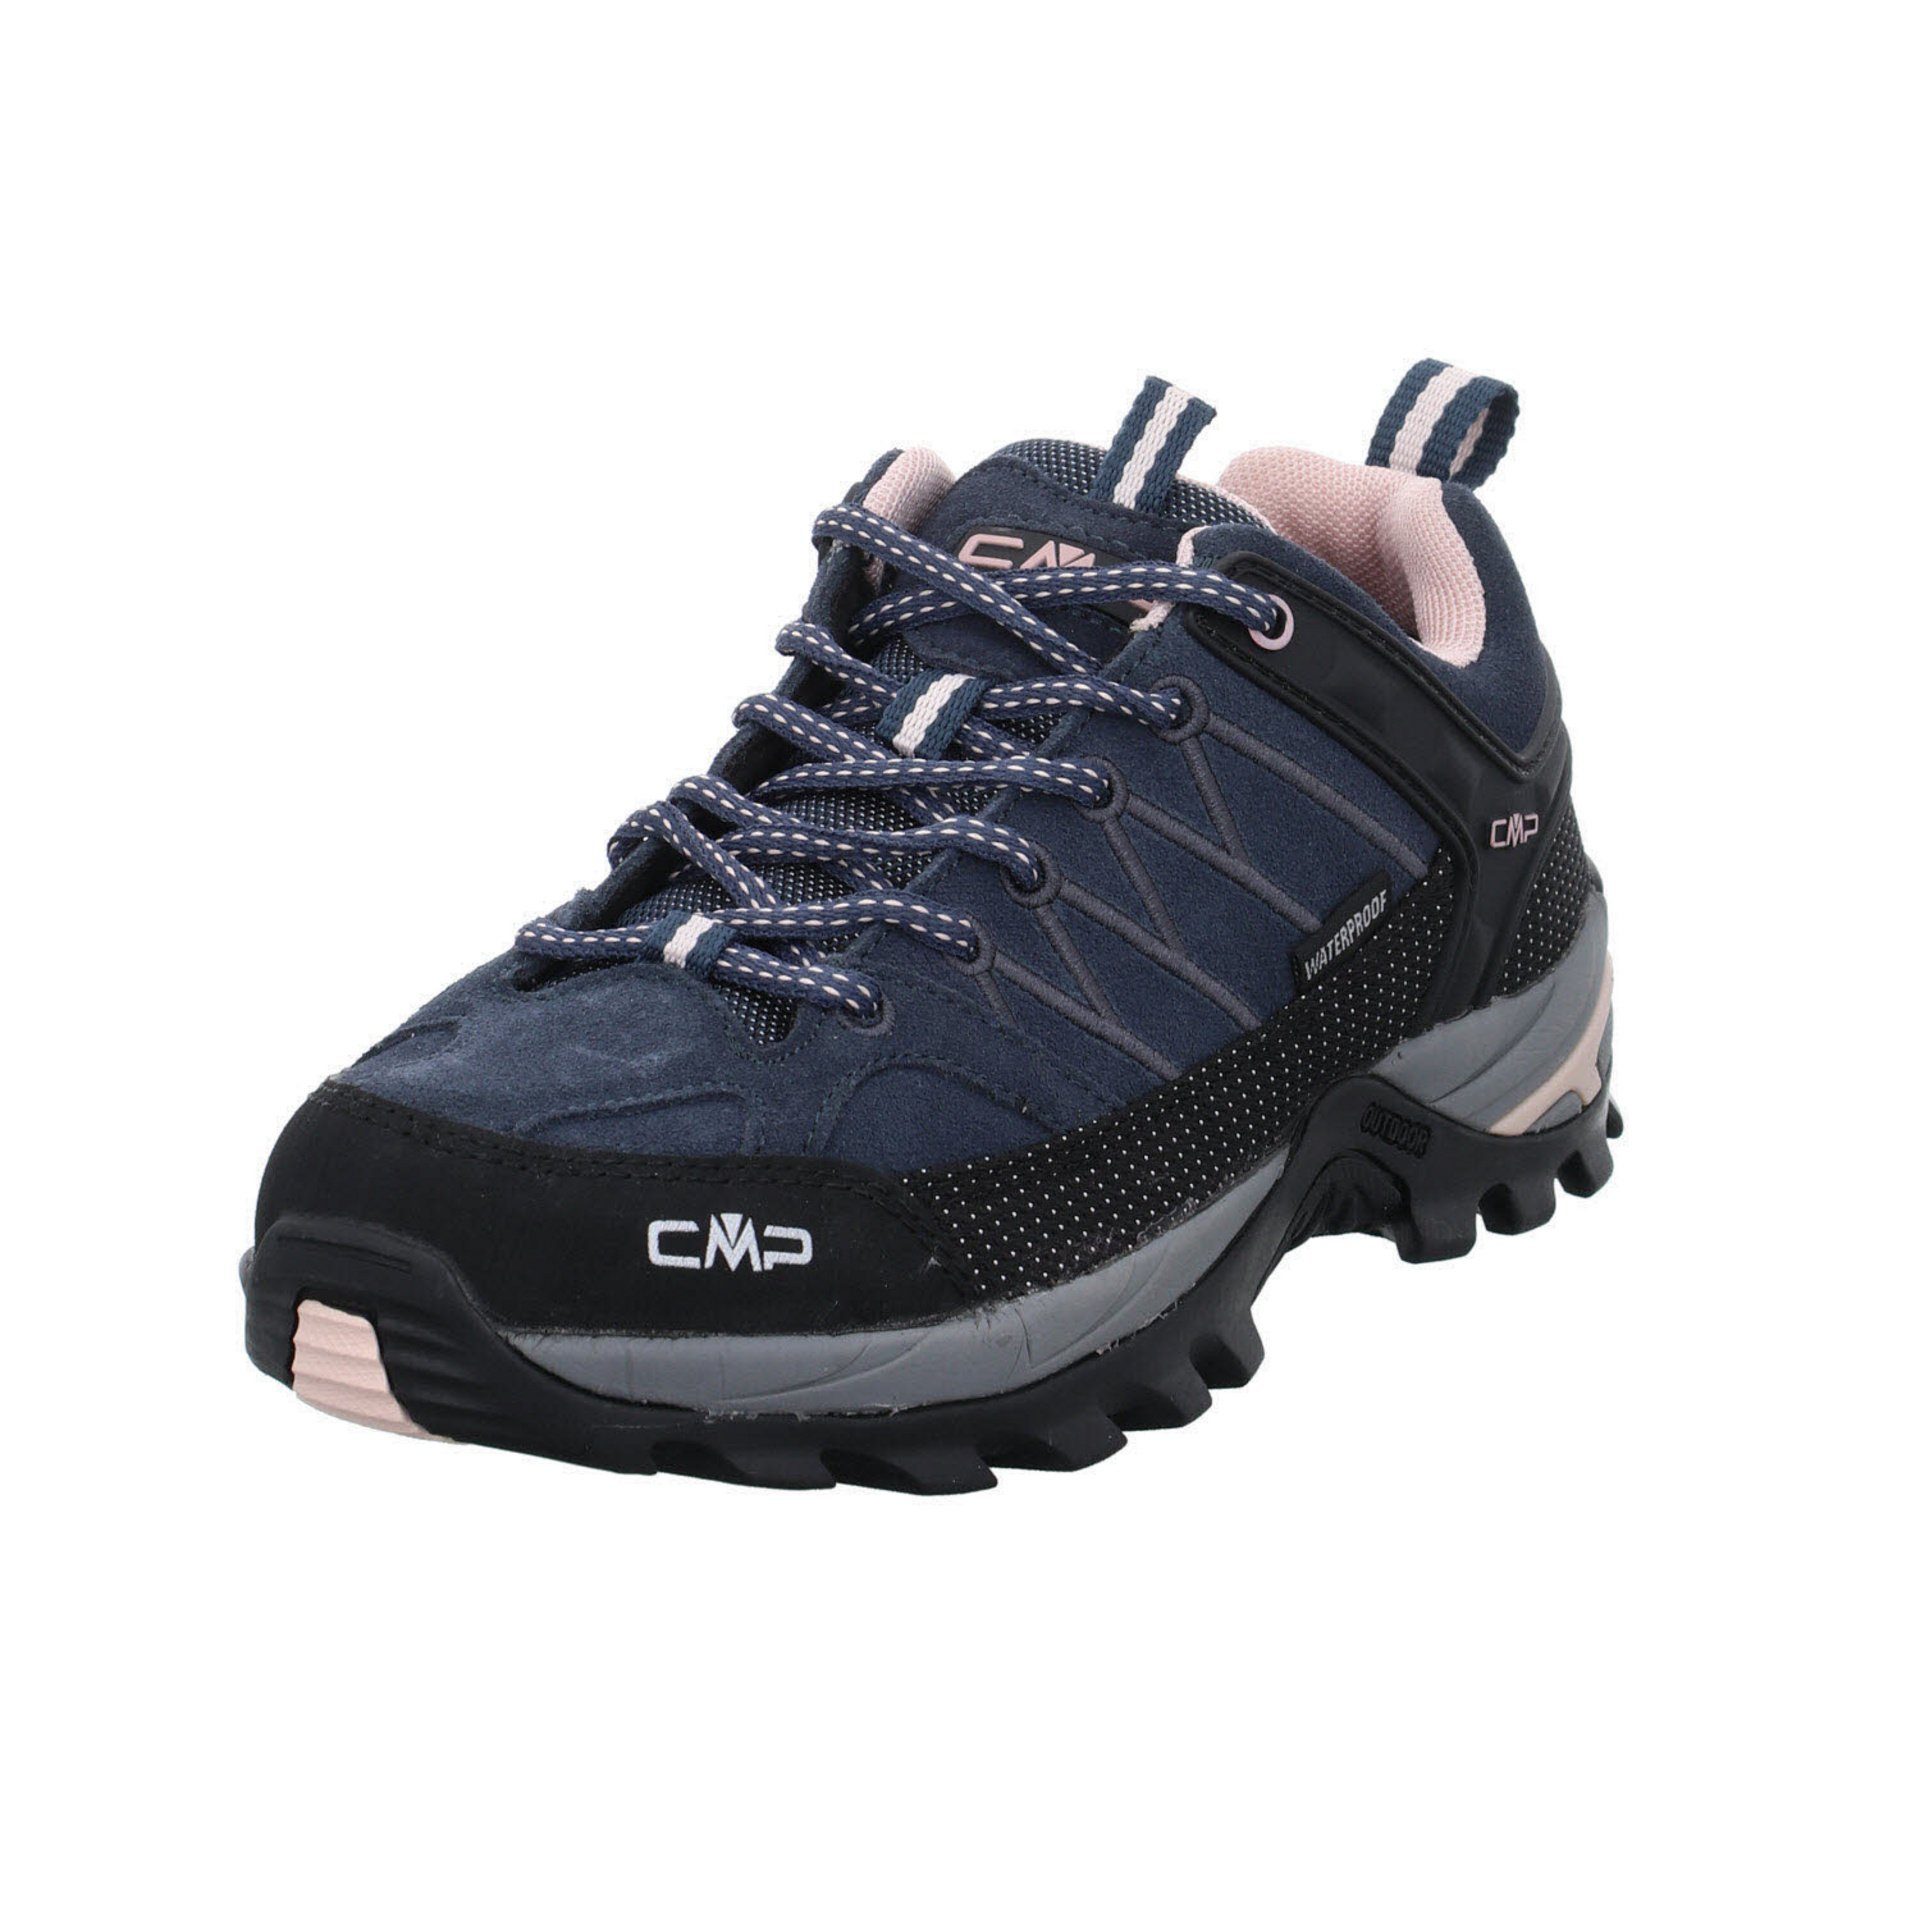 CMP Damen Schuhe Outdoor Riegel Low Outdoorschuh Outdoorschuh Leder-/Textilkombination anthrazit (201) | 